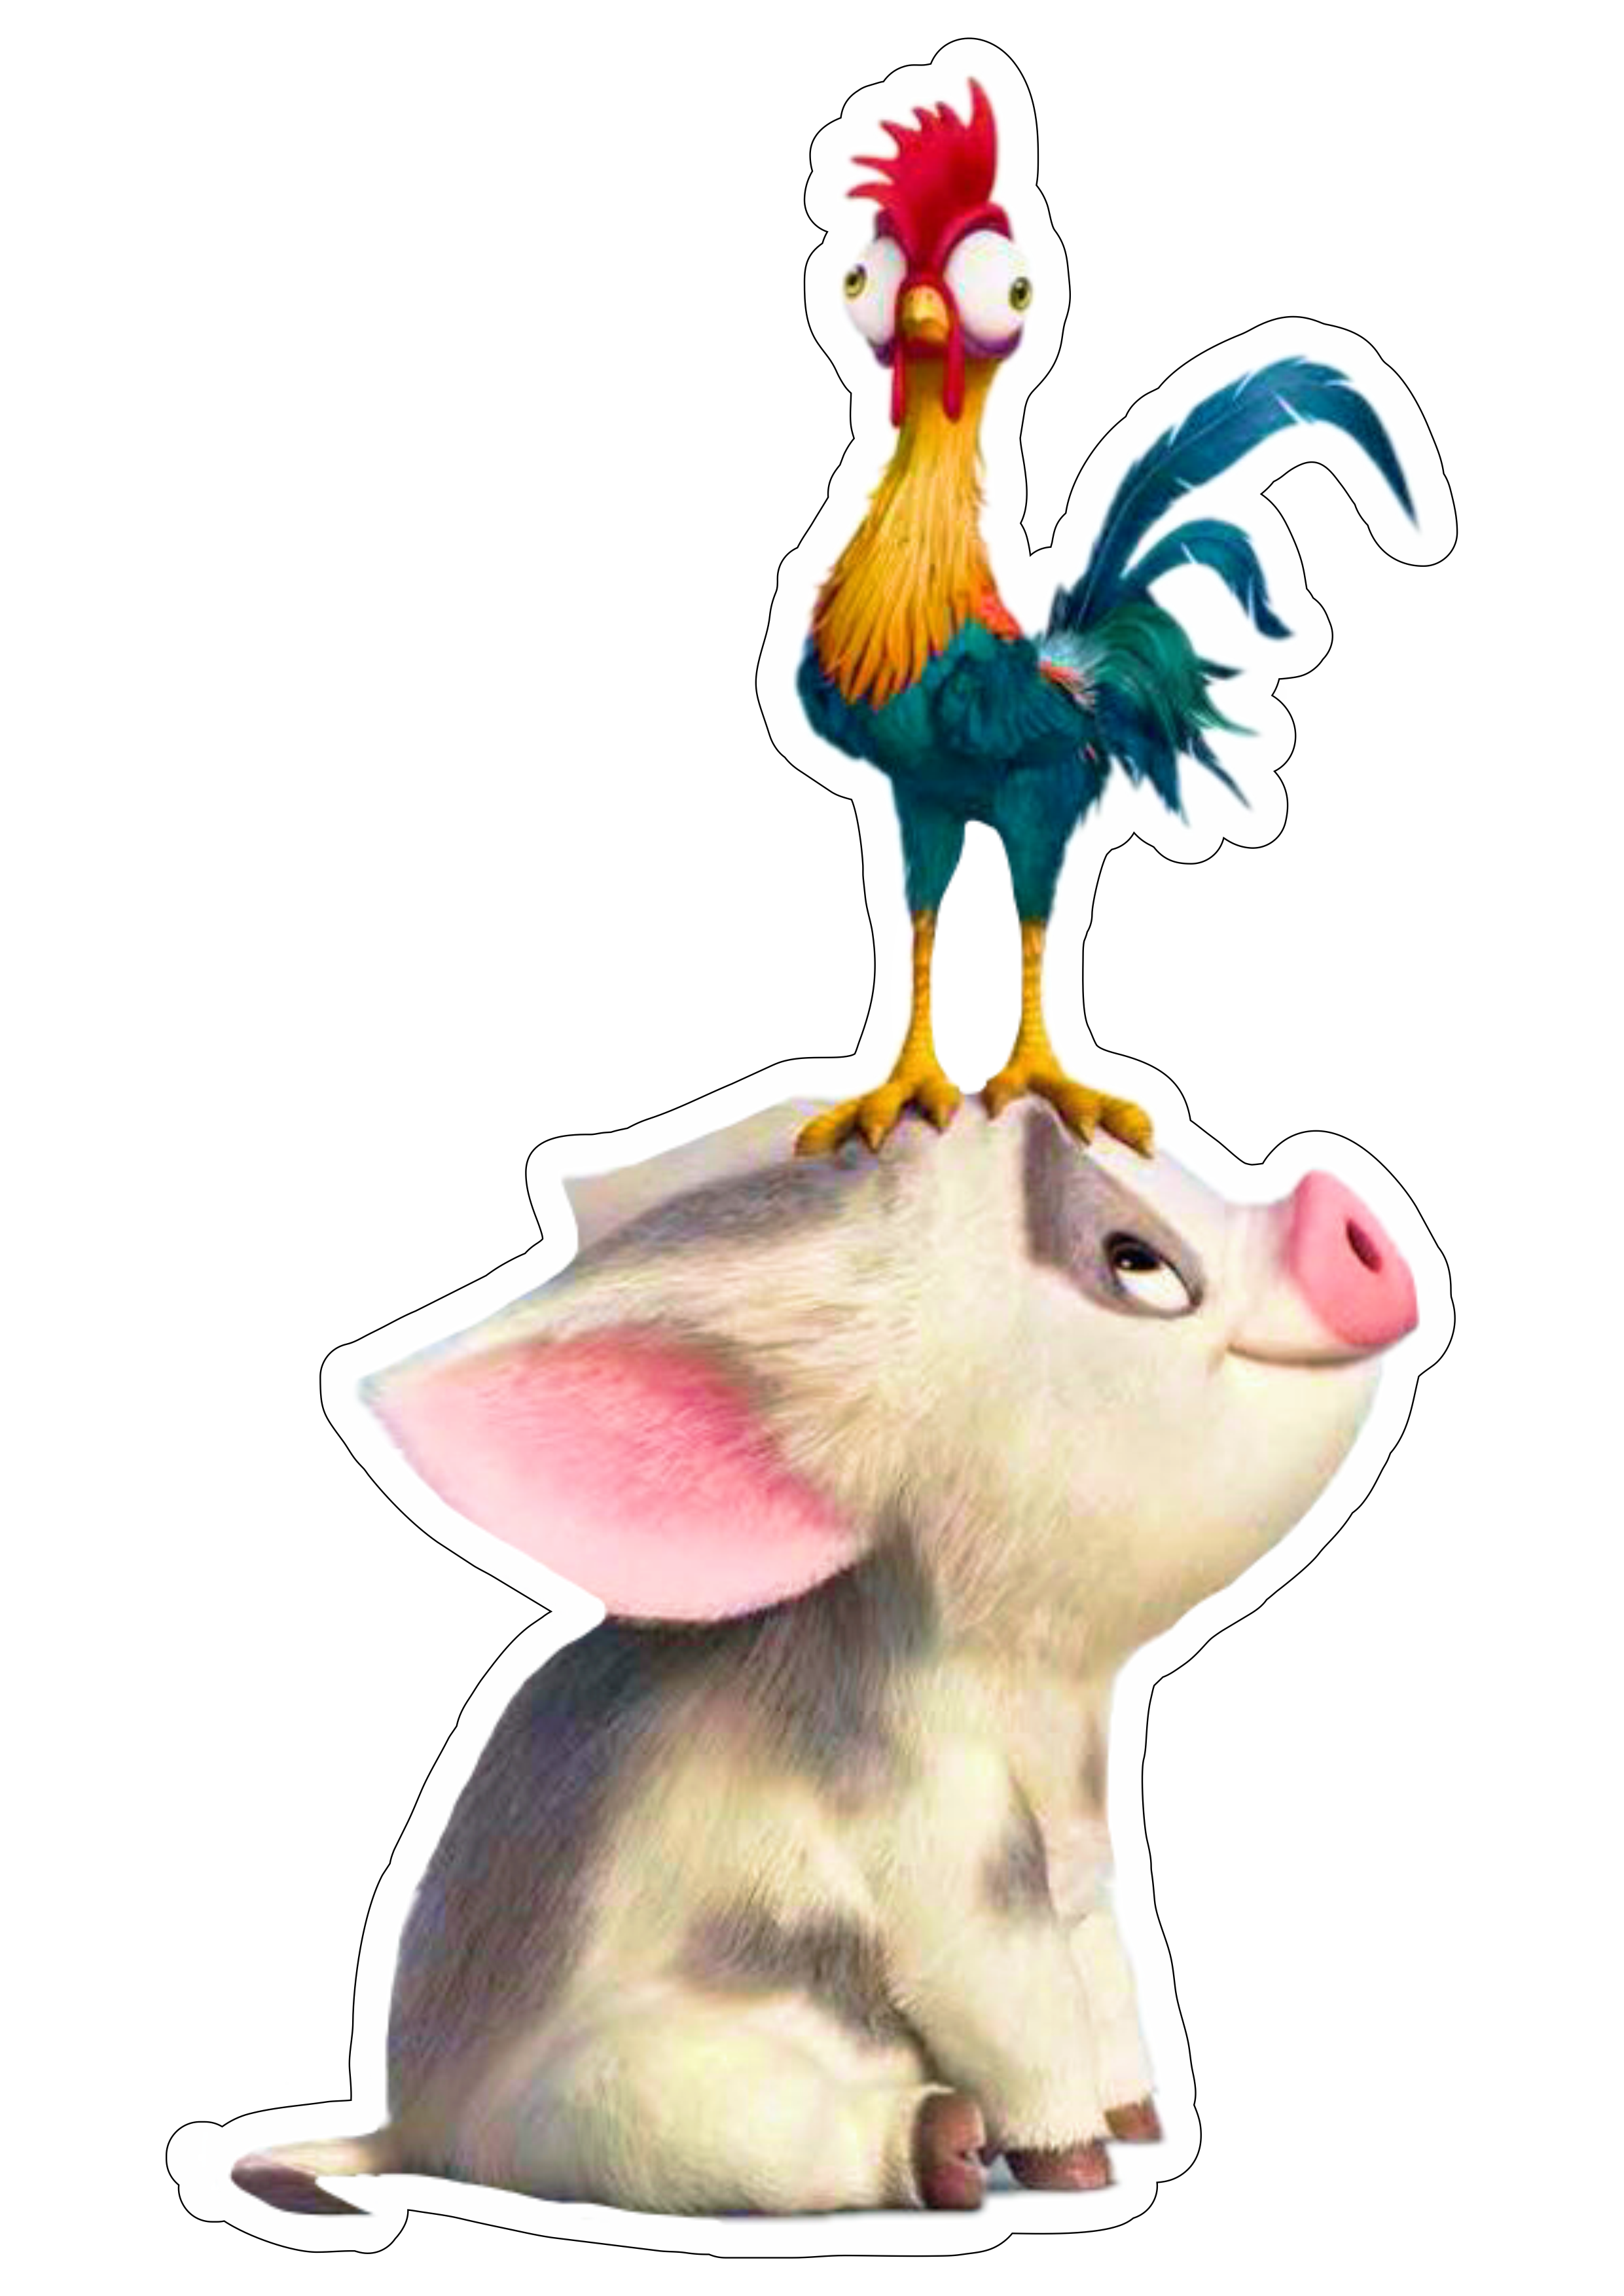 Moana porquinho e galinho filme infantil animação disney personagem fictício tropical imagem sem fundo png